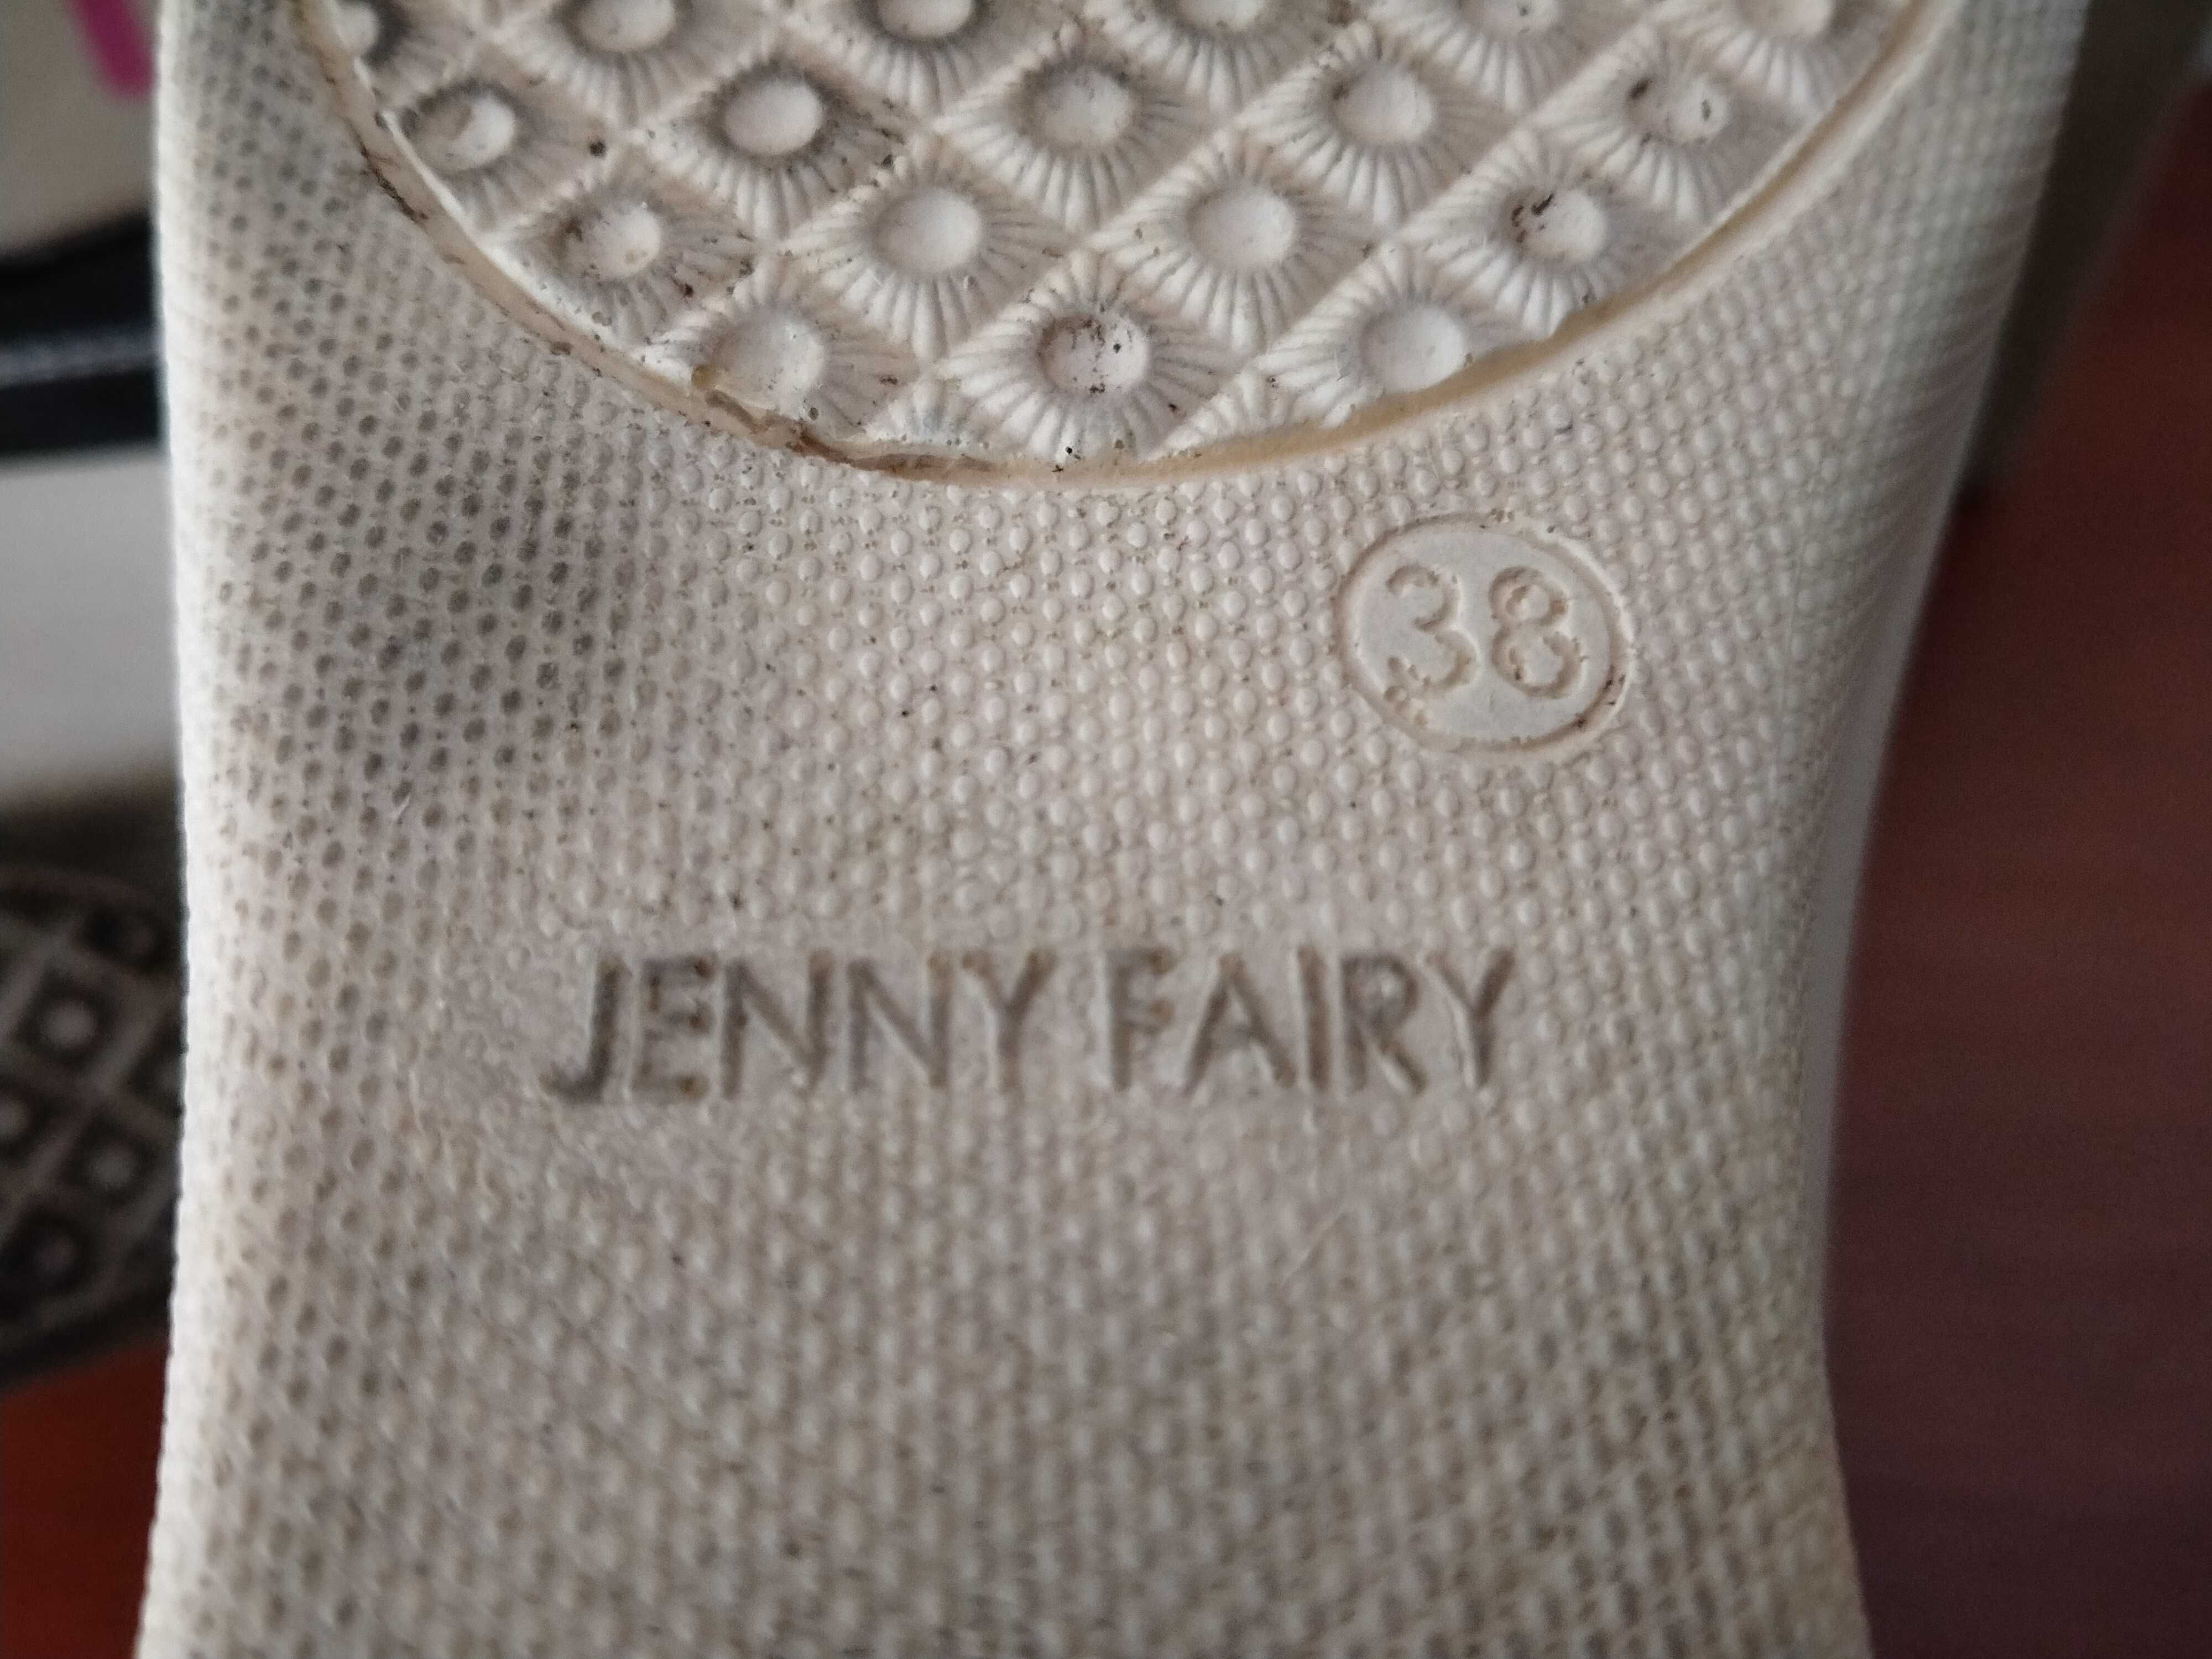 Damskie półbuty, pantofle, rozmiar 38, Jenny Fairy, czarne, używane